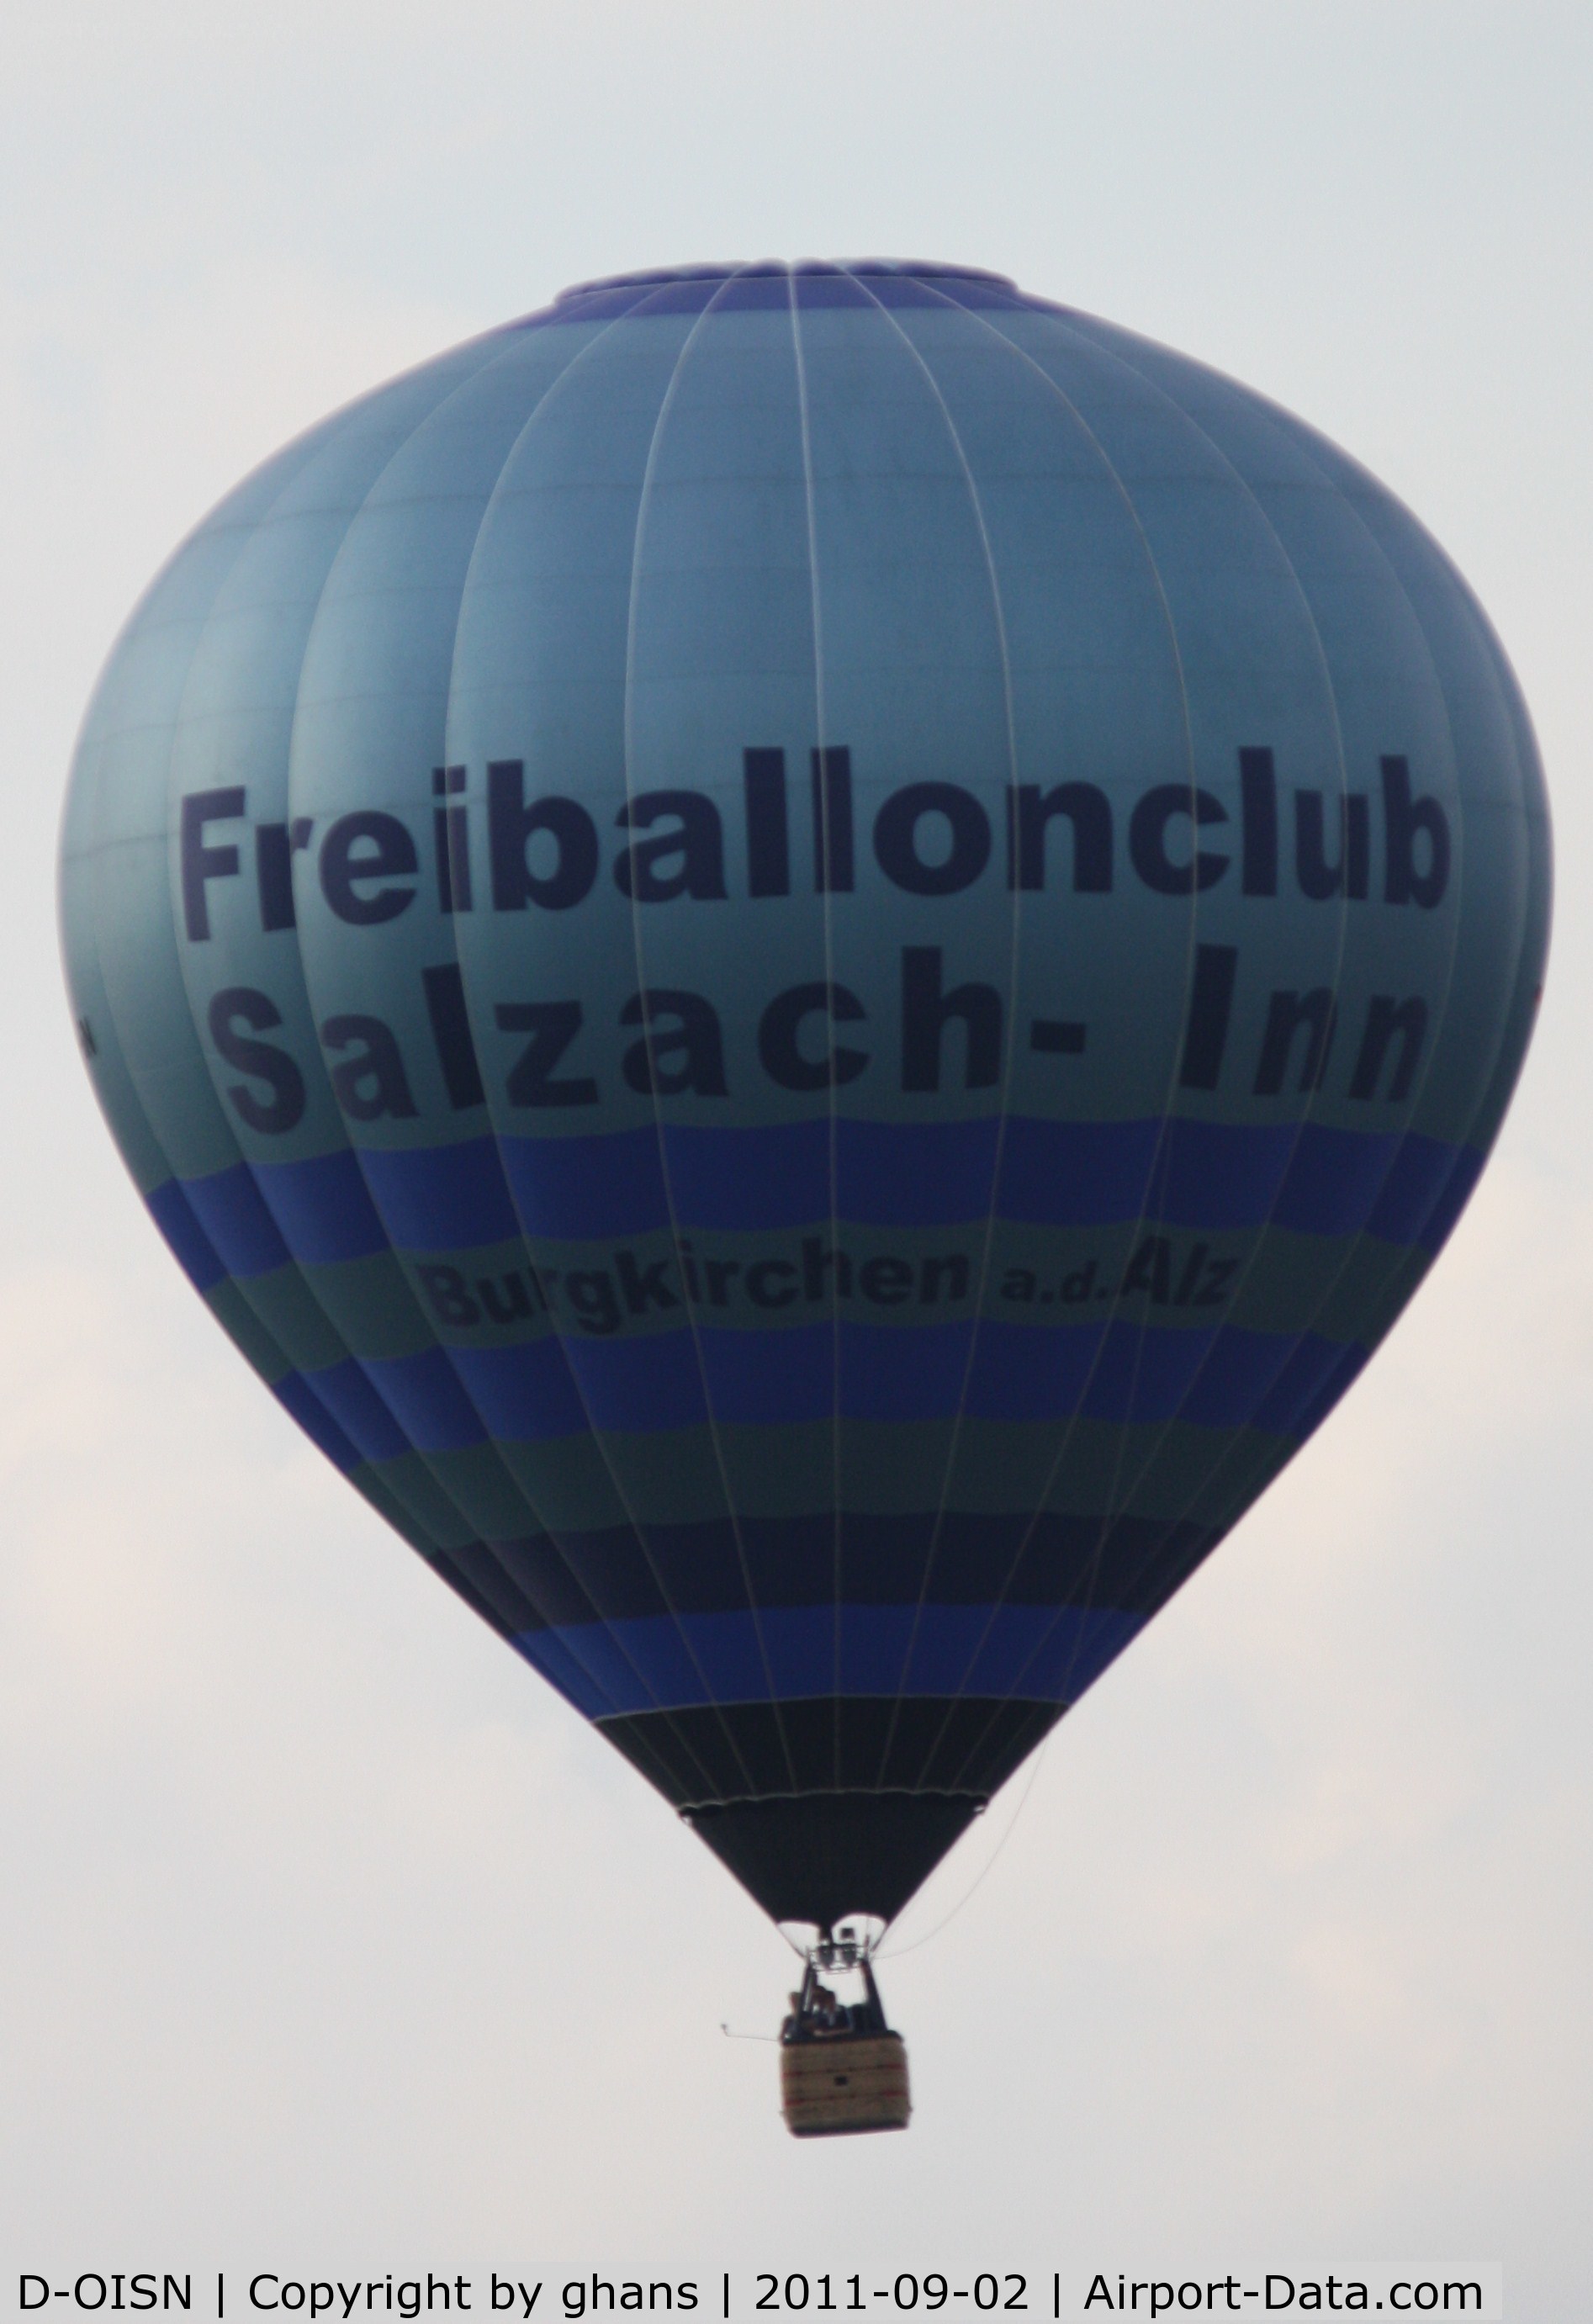 D-OISN, 2003 Schroeder Fire Balloons G34/24 C/N 1068, WIM 2011
'Freiballonclub Salzach-Inn'